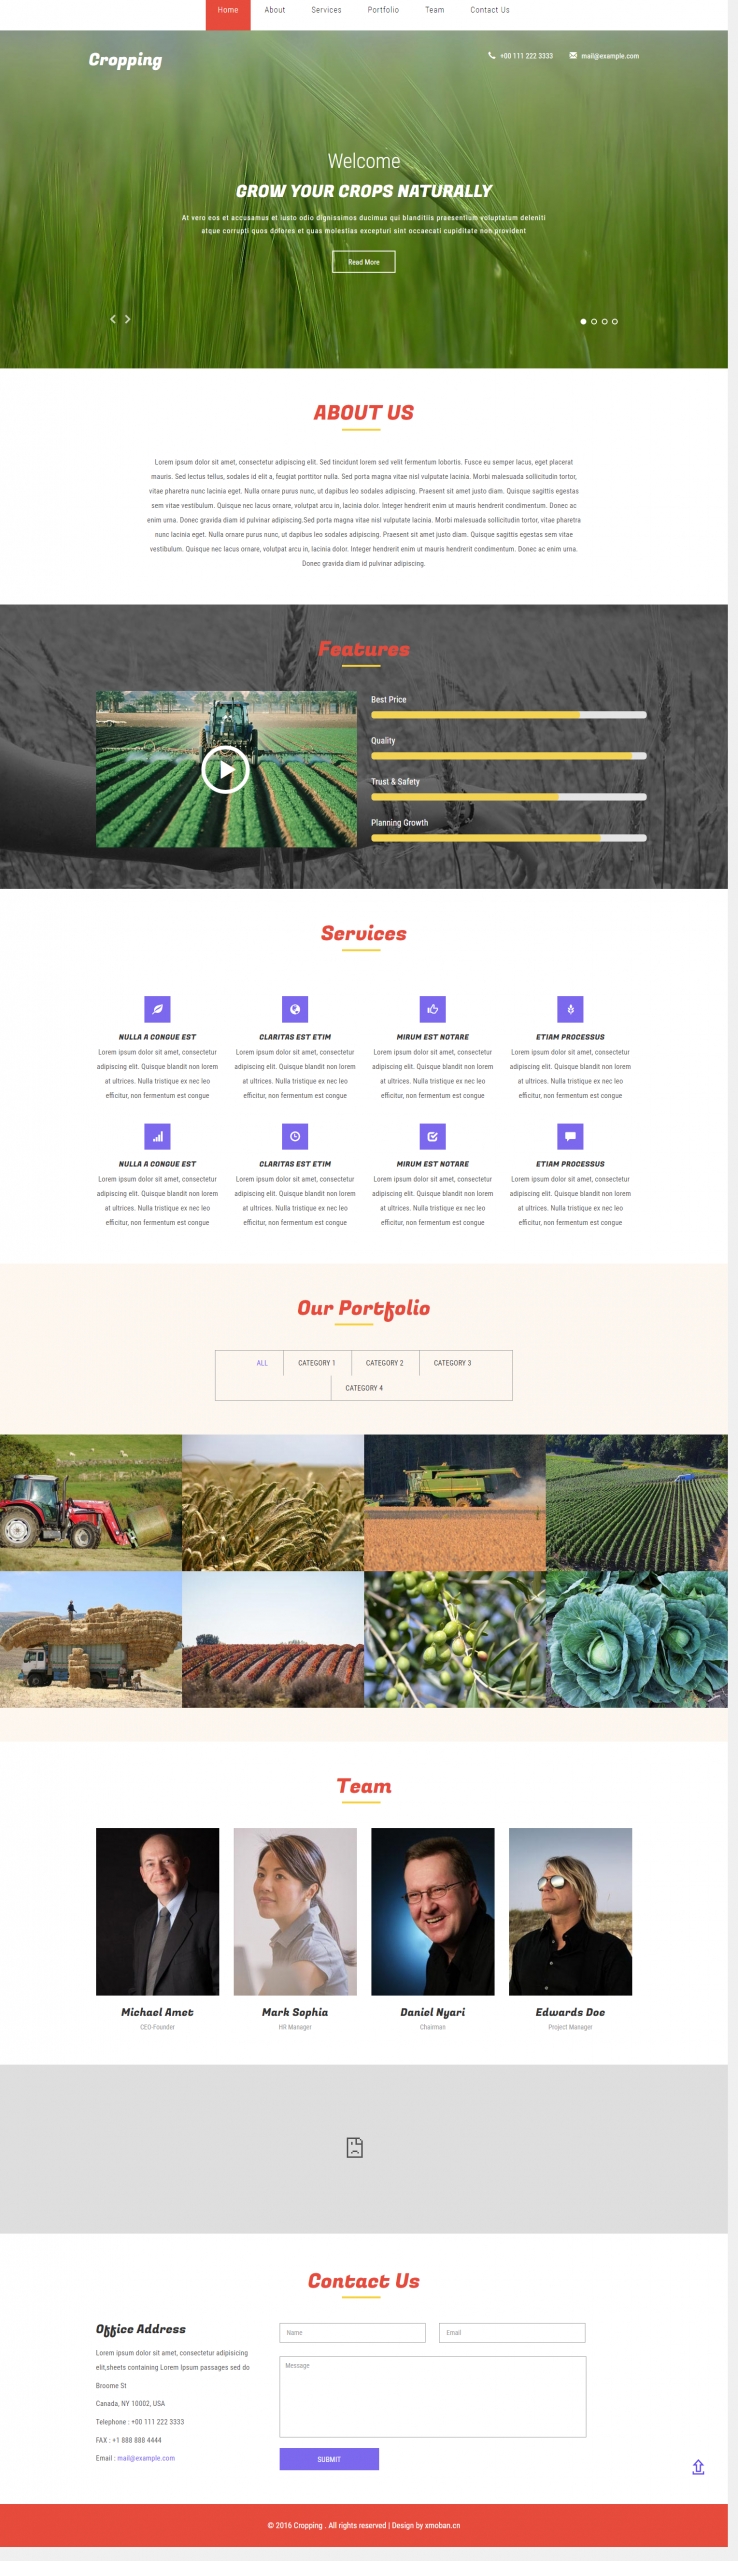 红色欧美风格的农场农业整站网站源码下载